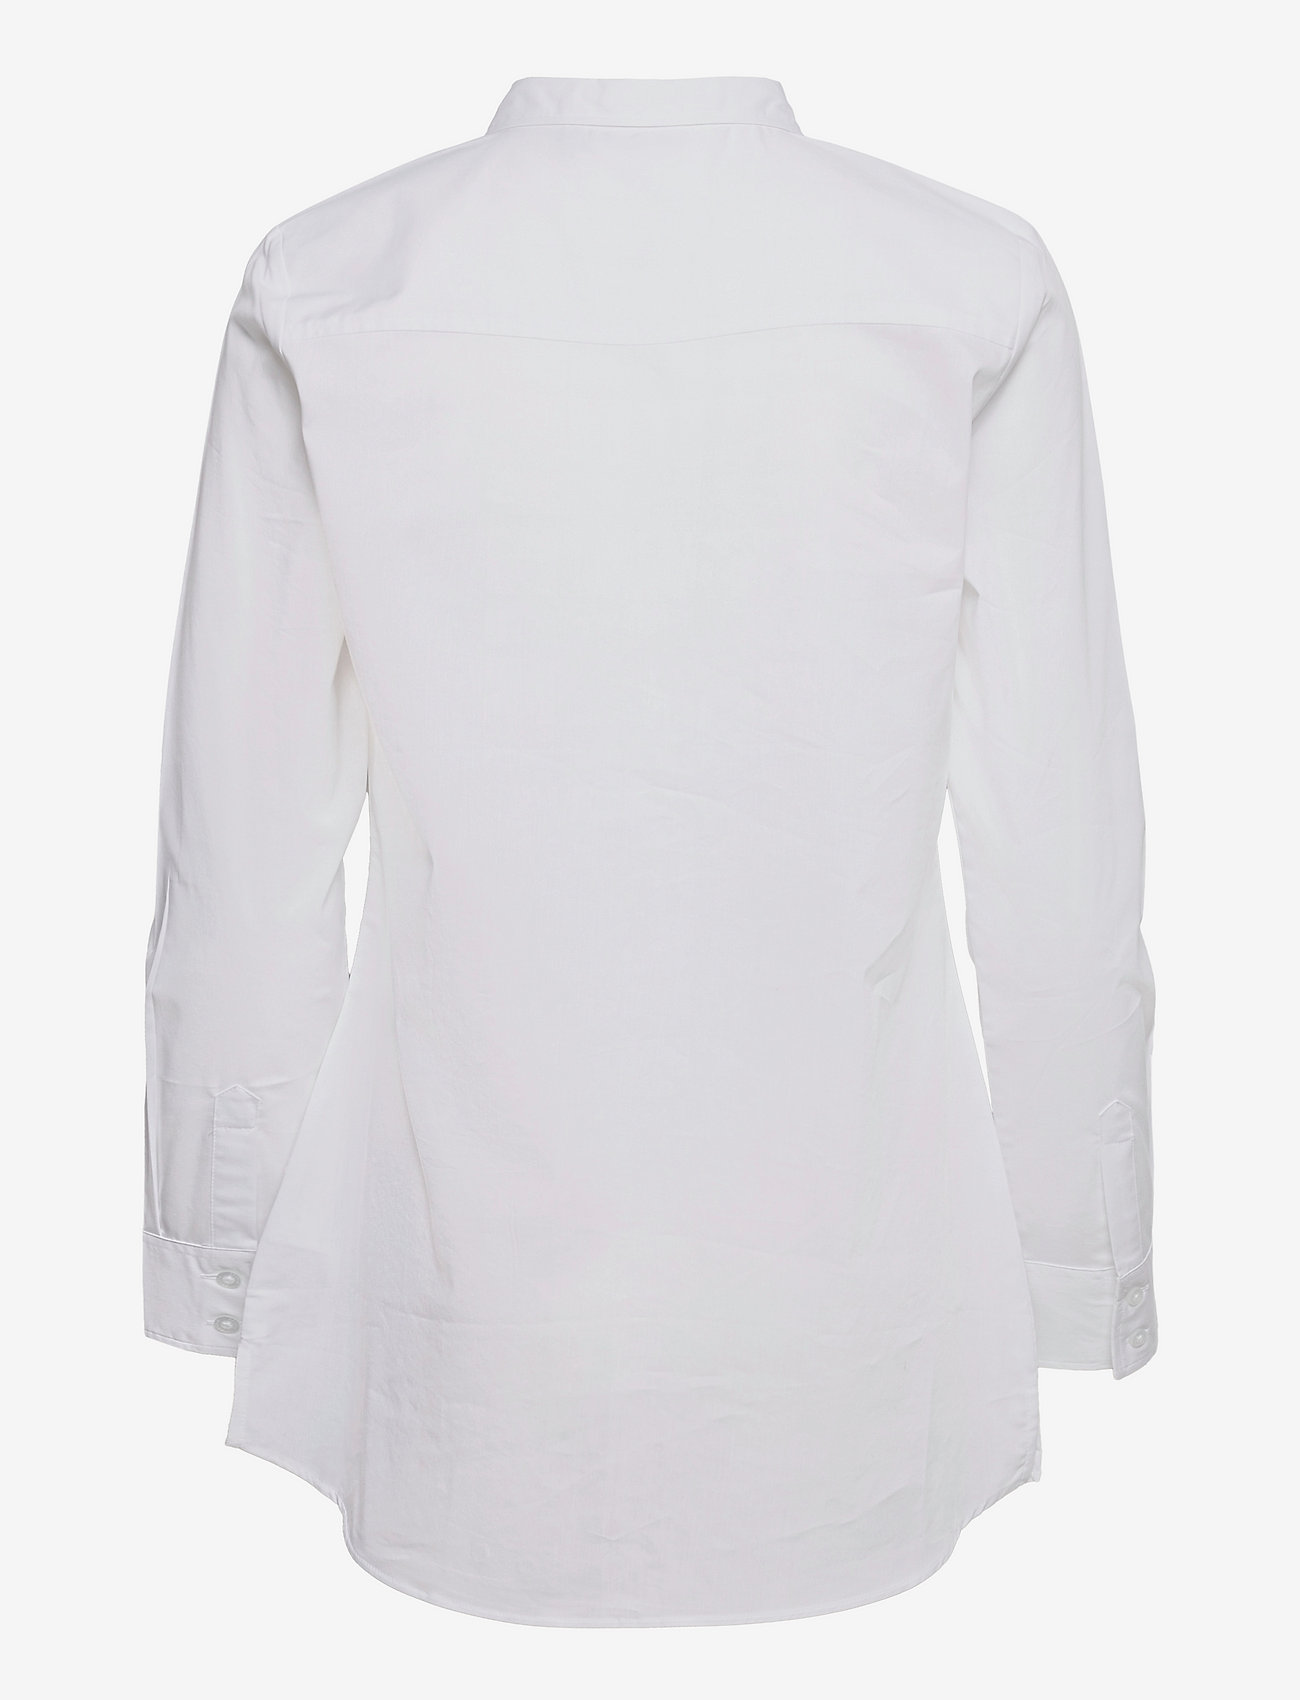 Fransa - FRZASHIRT 6 Shirt - langærmede skjorter - white - 1